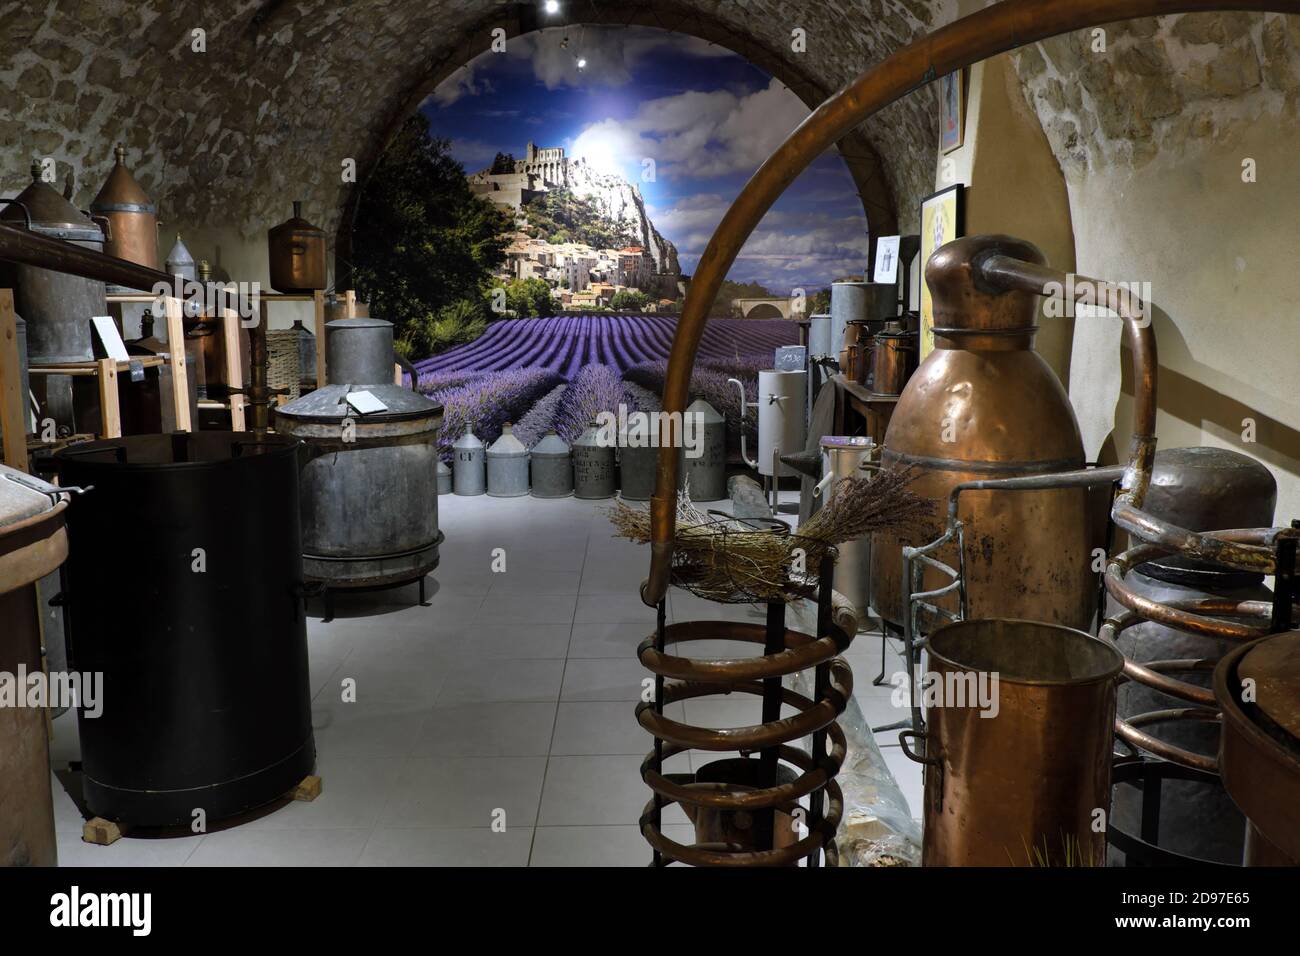 Ausstellung von Destillierkolben zum Destillieren von Lavendel, Laden von Absolue Lavande, Rue de la Sauneraie, Sisteron, Alpes de Haute Provence, Frankreich Stockfoto